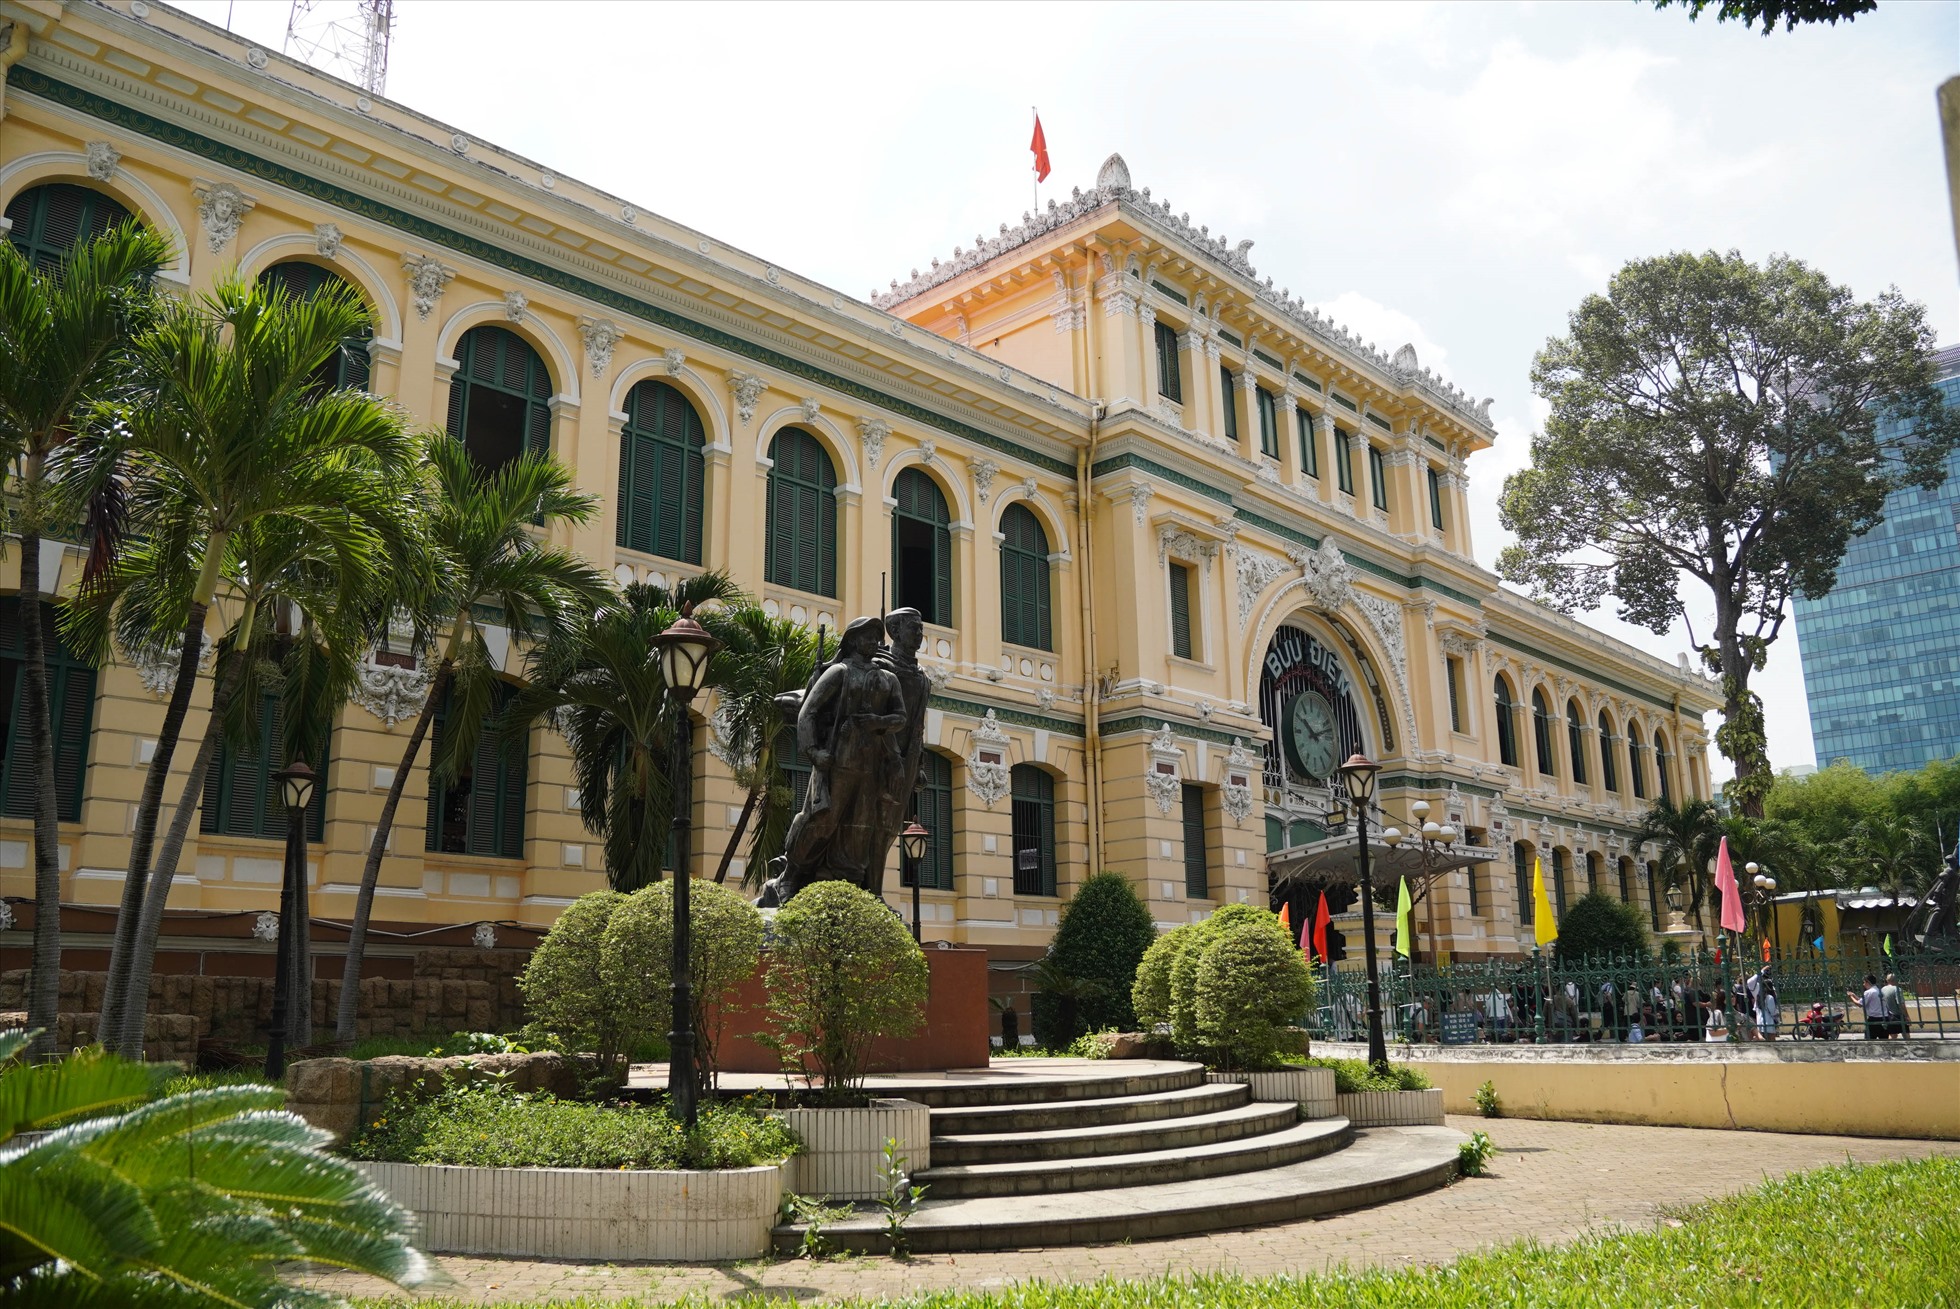 Tạp chí Condé Nast Traveller mô tả: “Mặt tiền màu vàng và cửa chớp màu xanh lá của Bưu điện Sài Gòn đã biến tòa nhà không chỉ là một bưu điện mà trở thành điểm đến thu hút khách du lịch“.